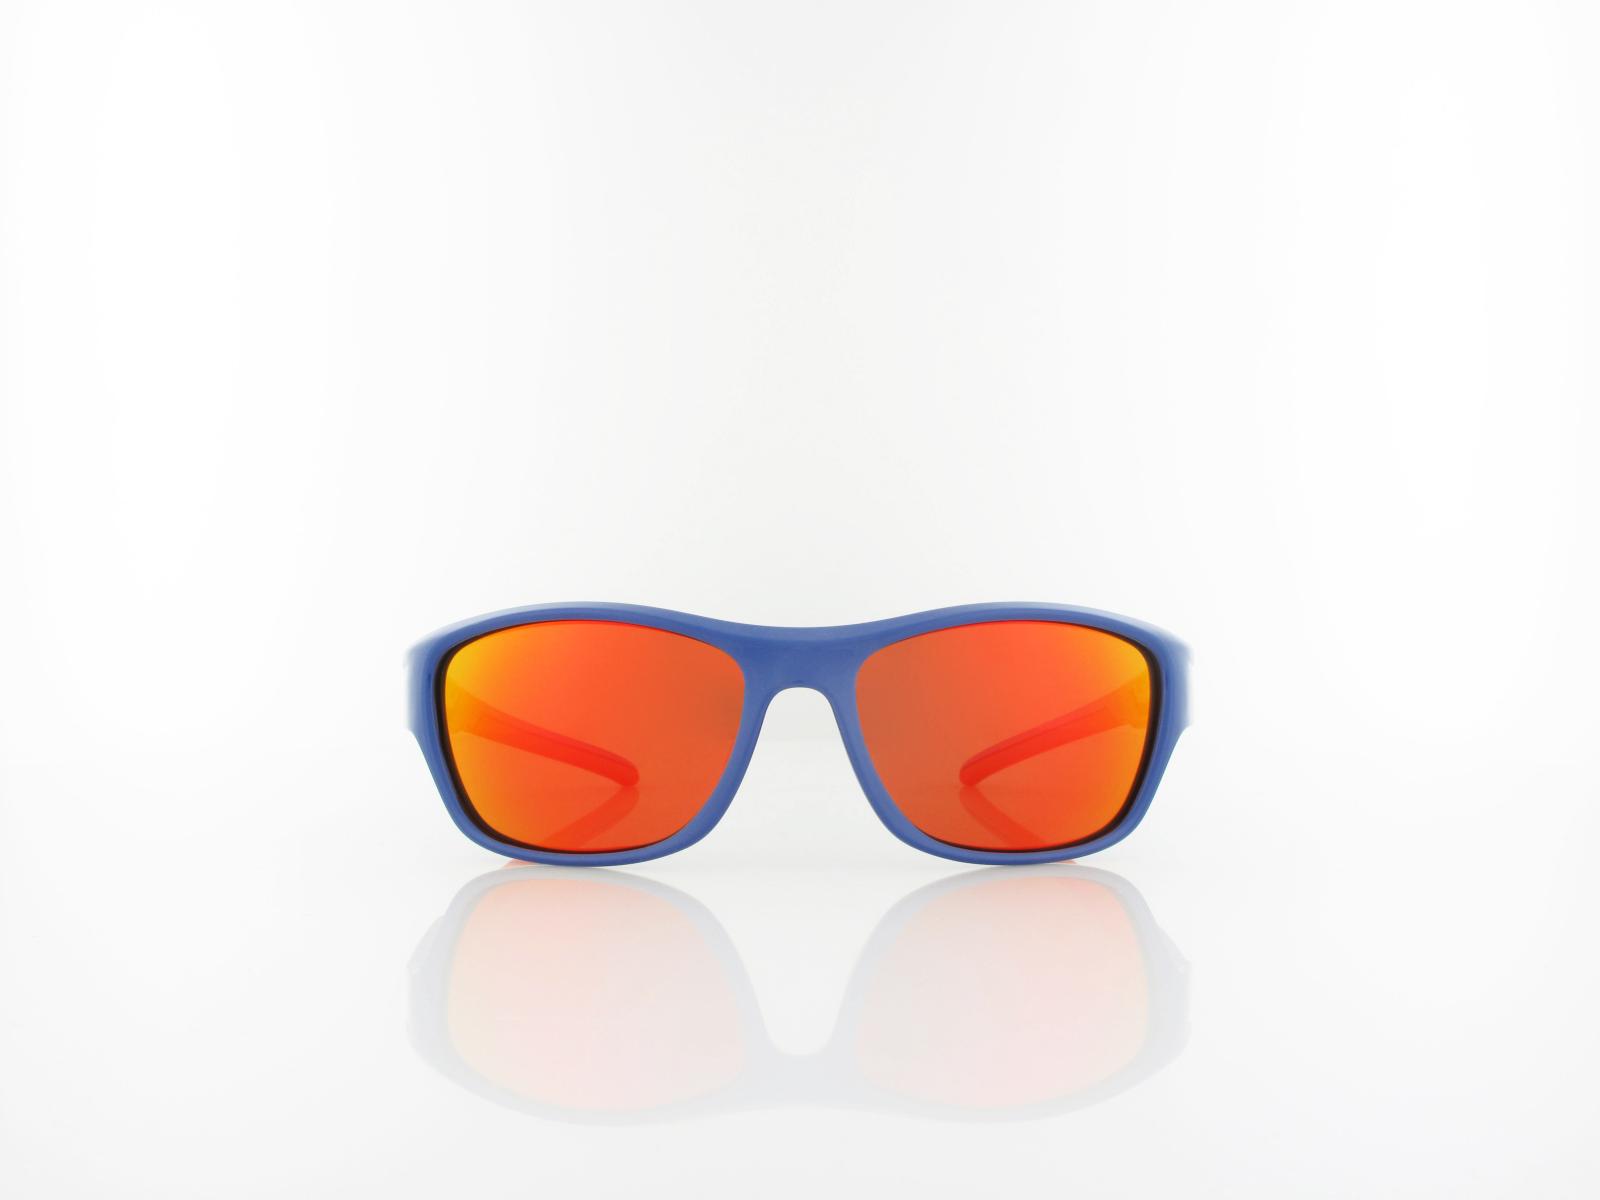 HIS polarized | HPS40103-1 52 | blue / brown with orange revo polarized